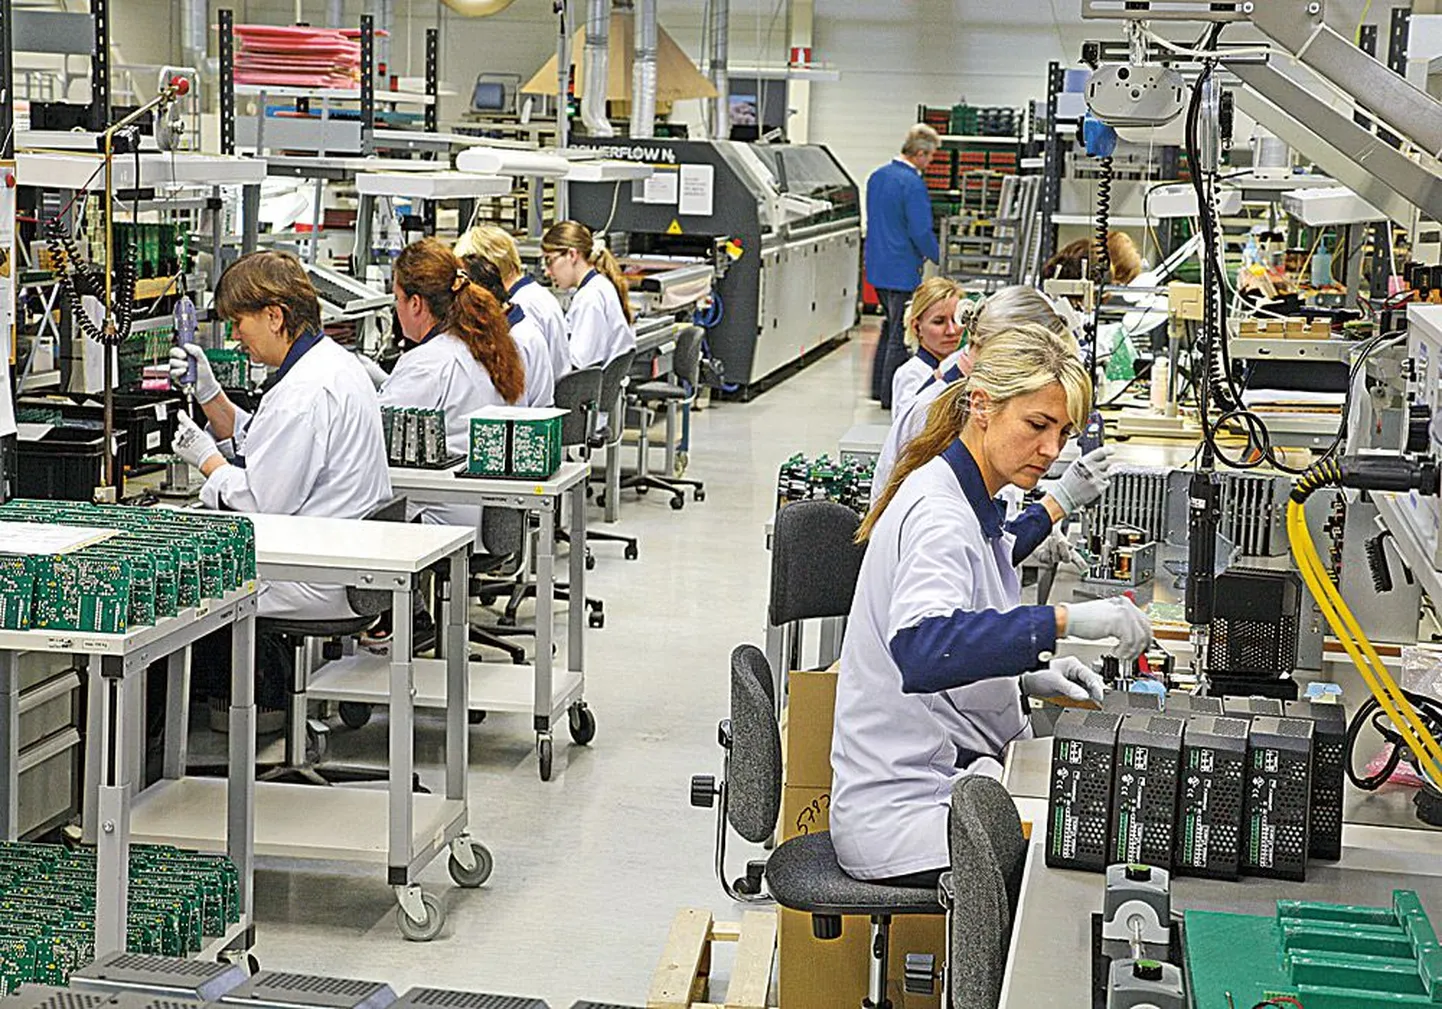 Завод по производству деталей для электроники, принадлежащий шведскому биржевому предприятию NOTE AB, расположен в Пярну: Эстония представляется скандинавским клиентам выгодным местом для размещения производства.